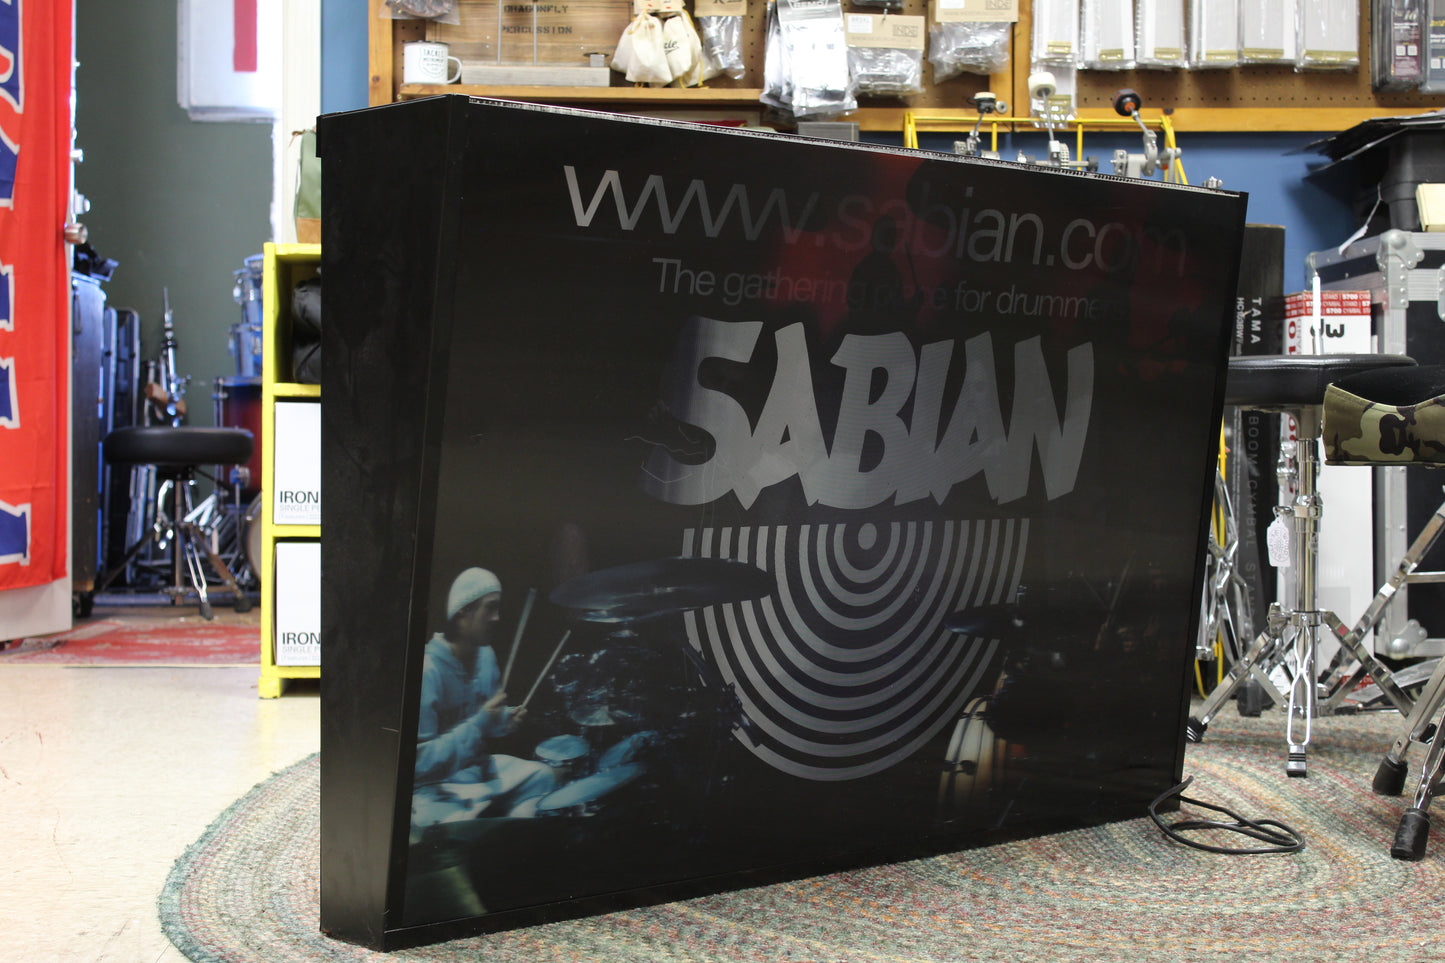 Sabian light up / holographic dealer sign - 8x30x47